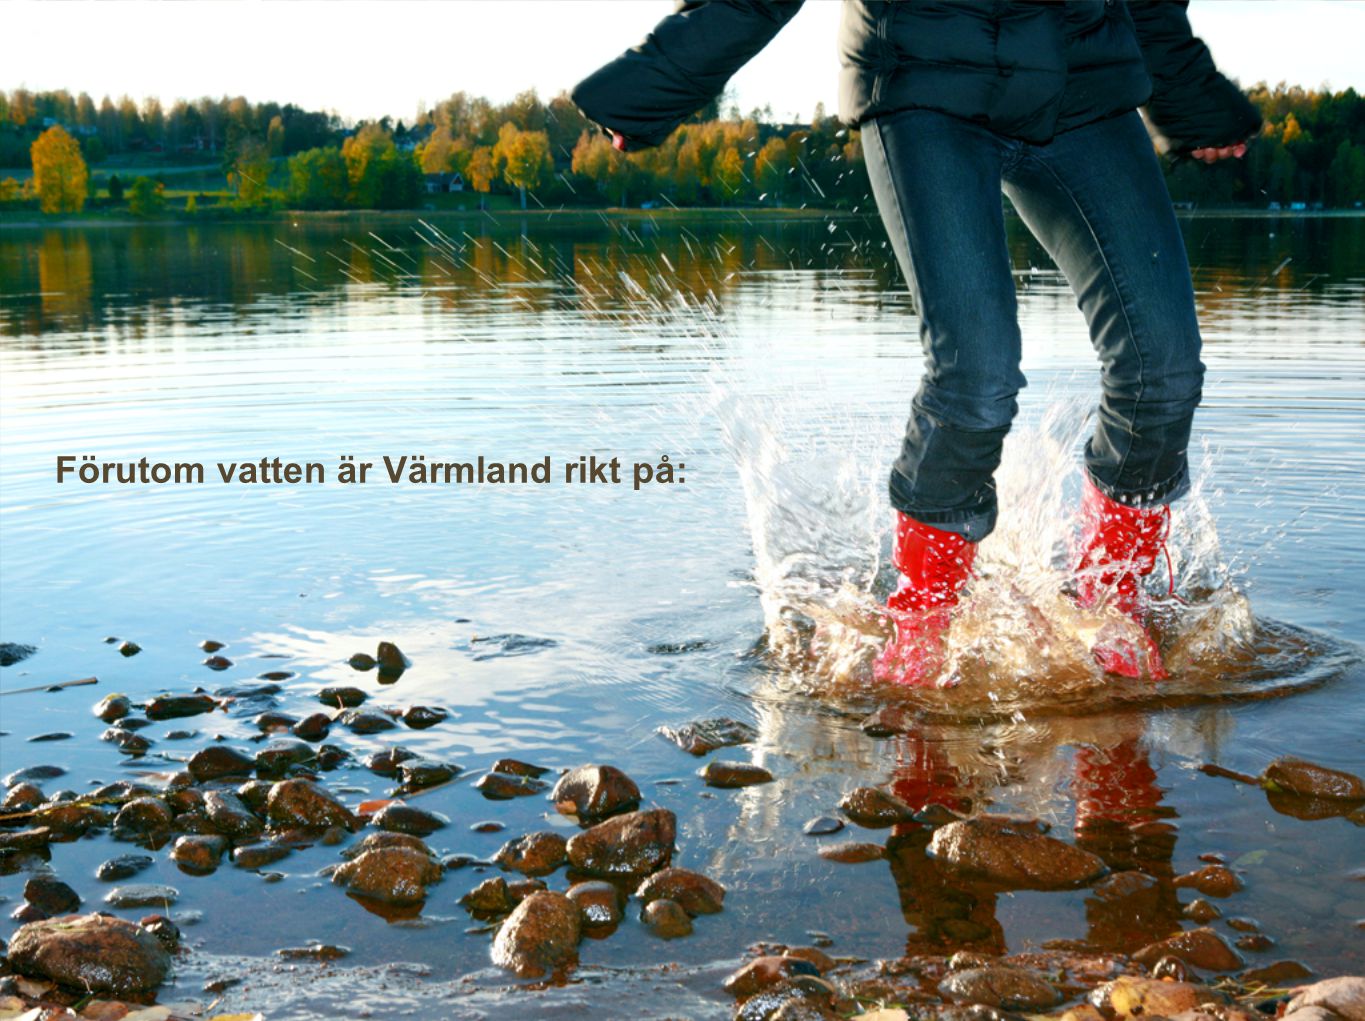 Förutom vatten är Värmland rikt på: